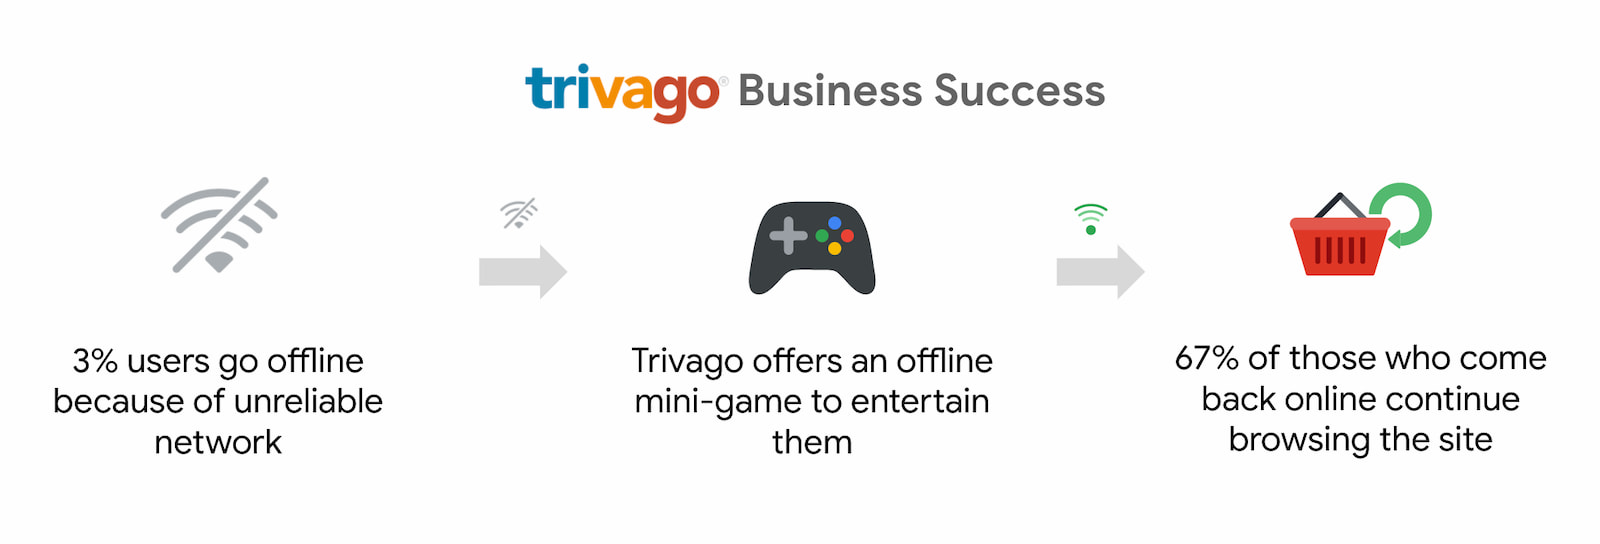 Trivago зафиксировал рост числа пользователей, которые вернулись в Интернет и продолжили просмотр на 67%.